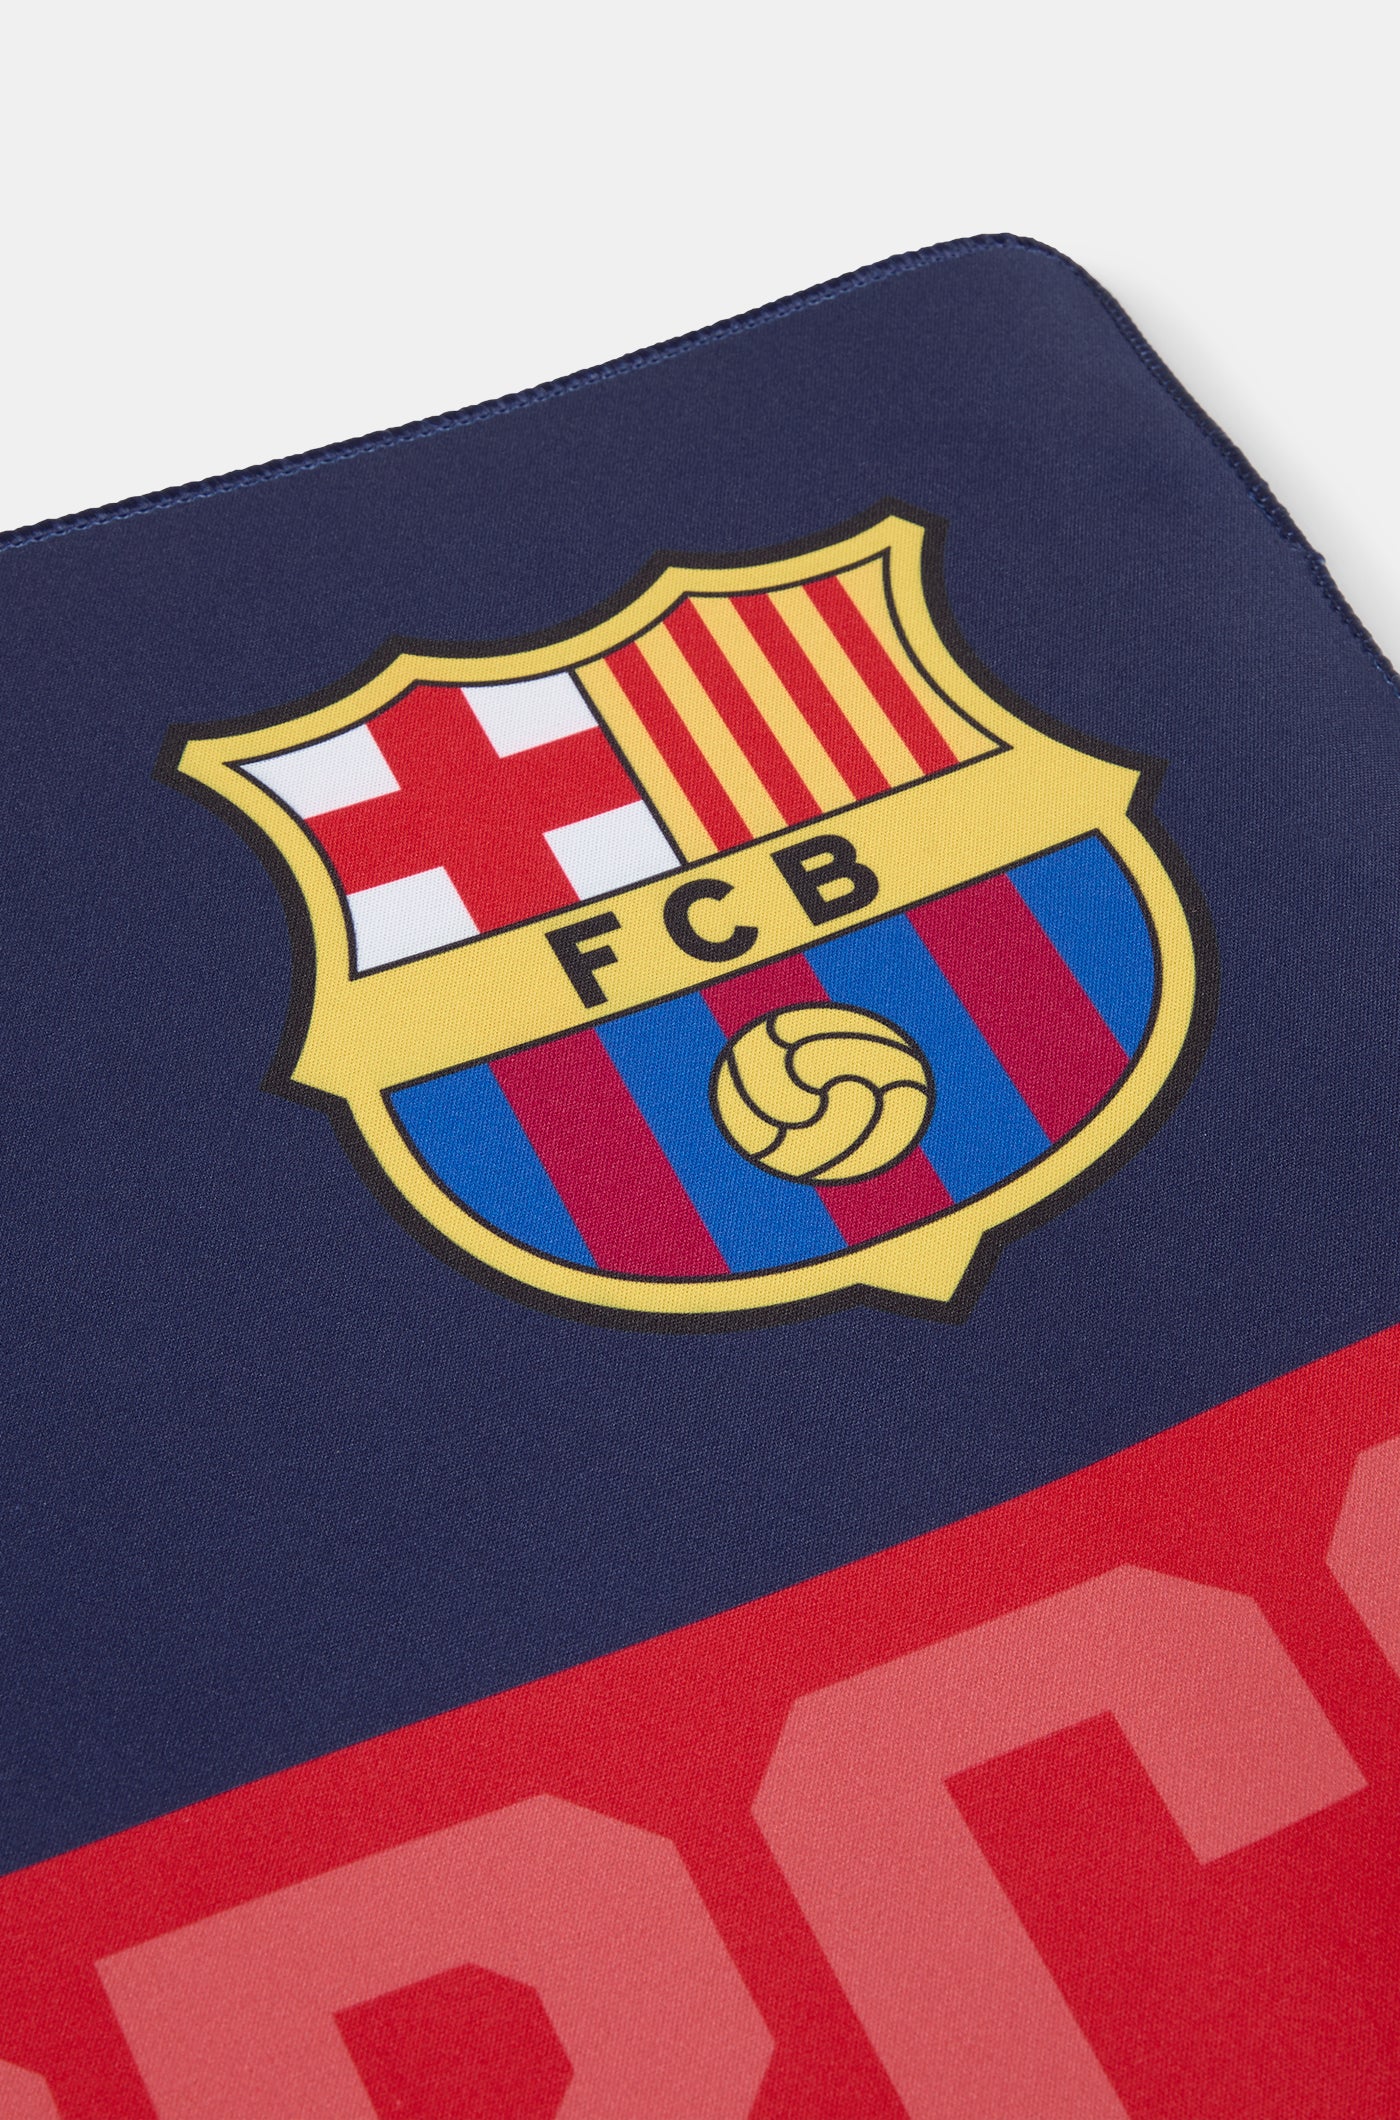 Alfombrilla ratón XL FC Barcelona